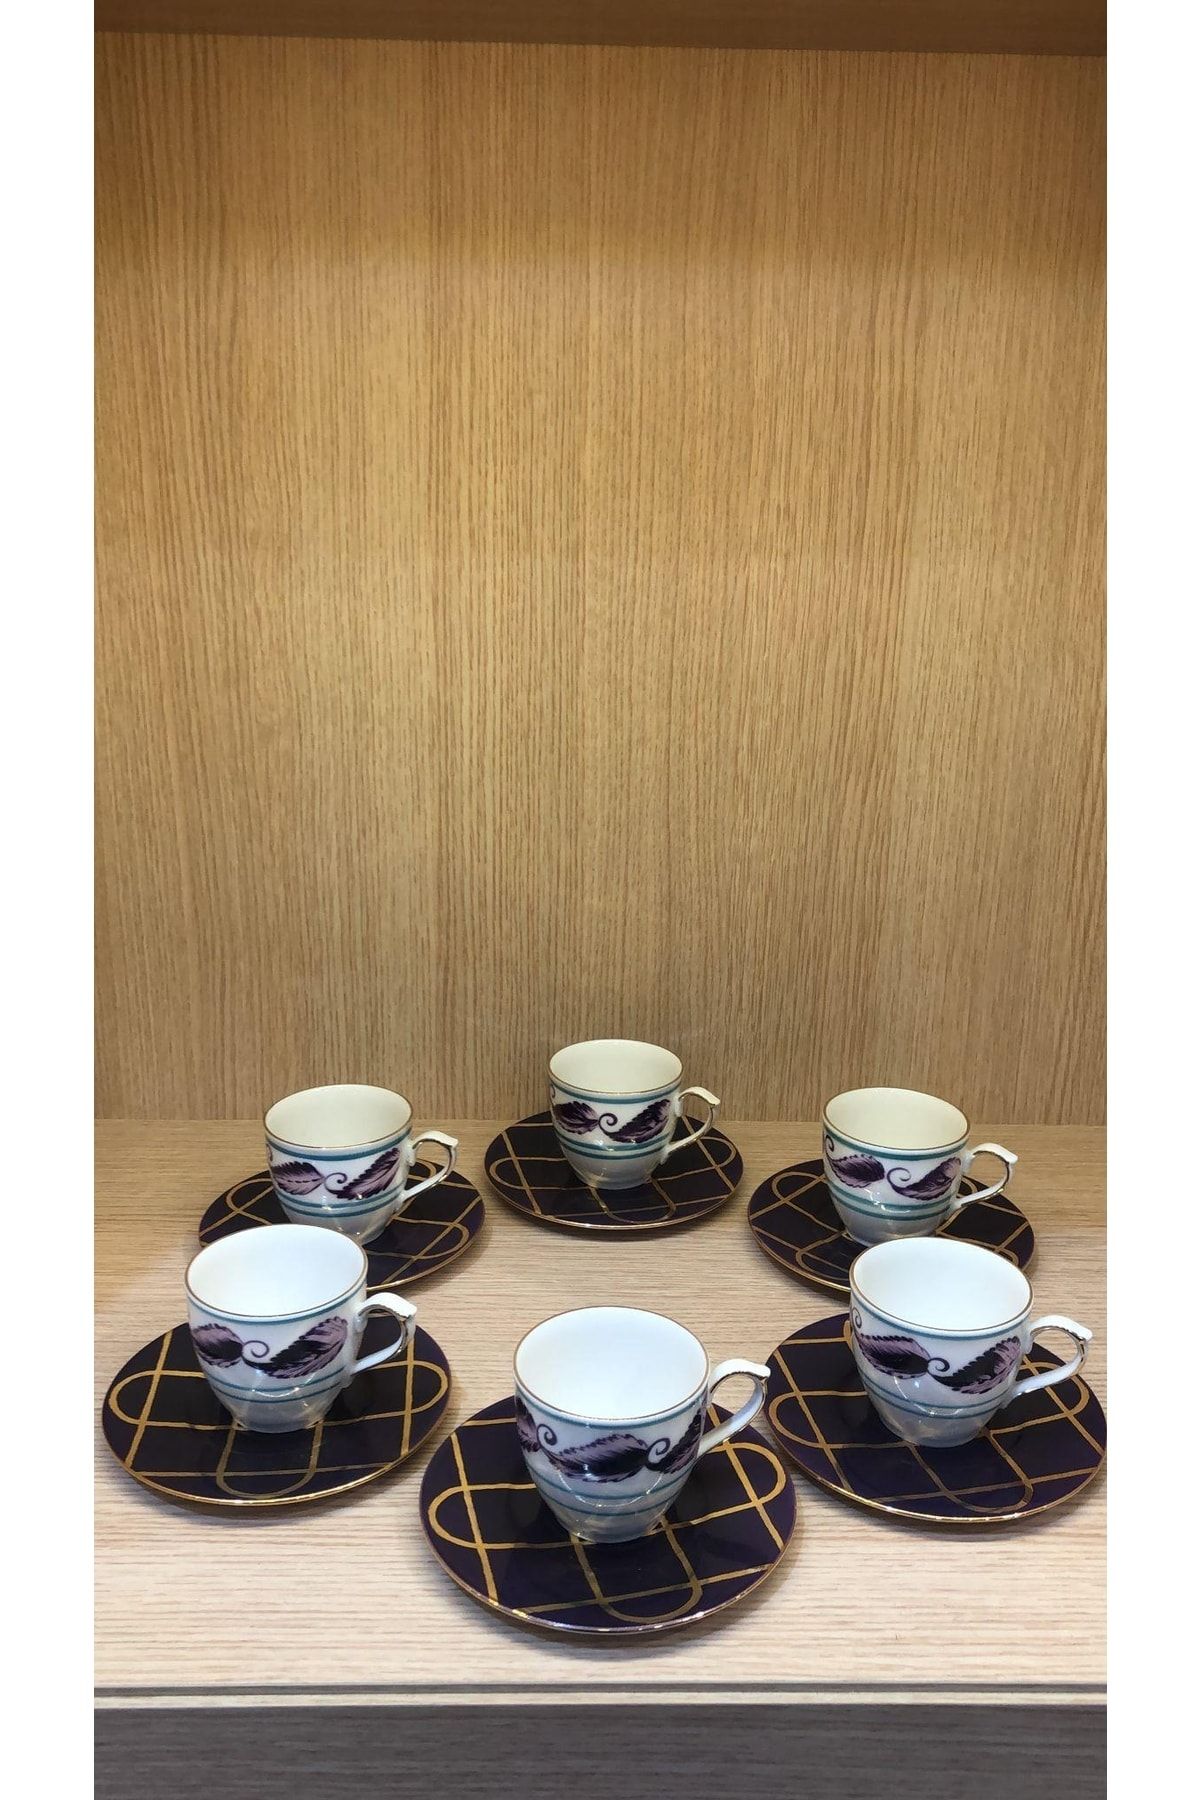 Güral Porselen Presıdent Çay Fincan Takımı El Dekoru 6 Kişilik